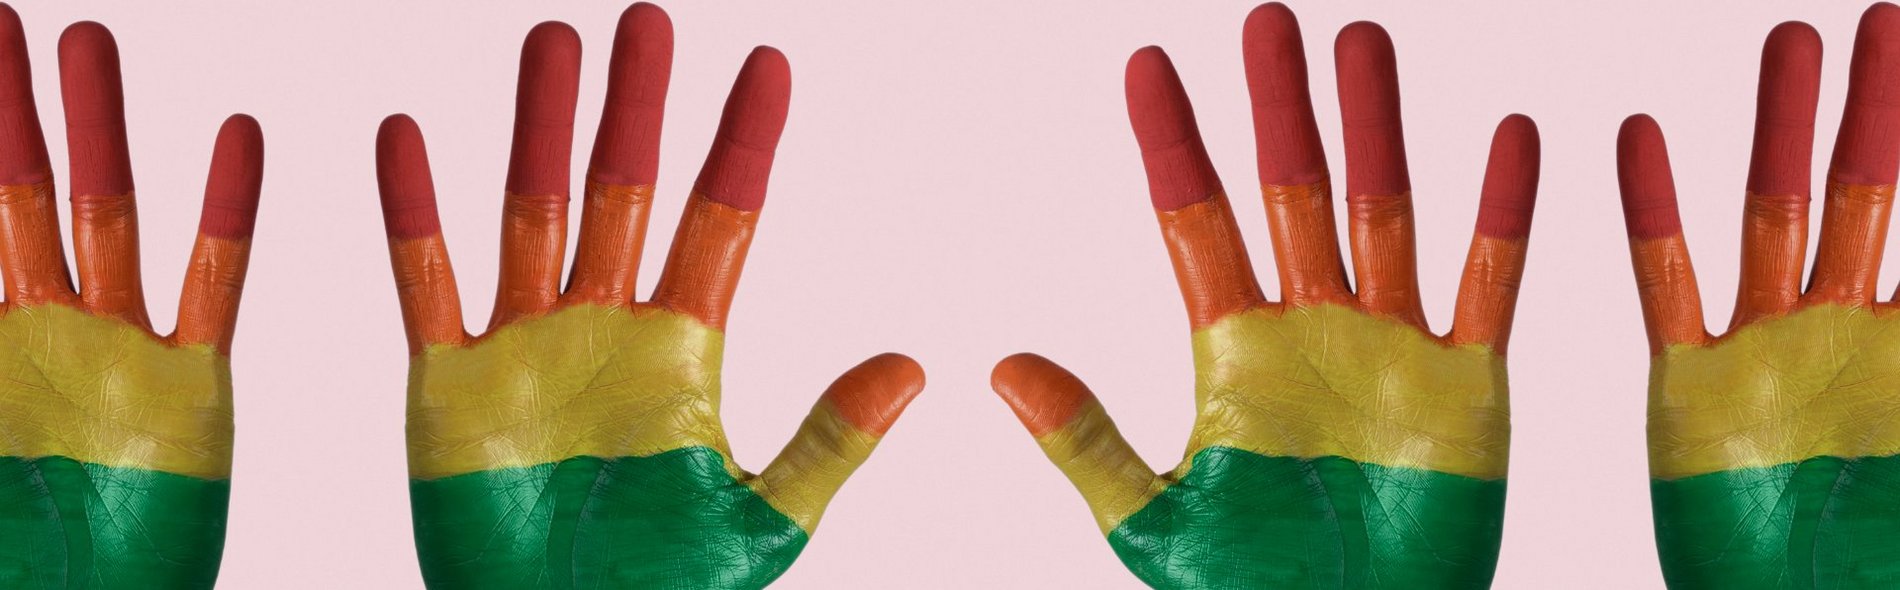 Foto von vier Händen, bemalt mit den bunten Farben der LGBTIQ-Bewegung.